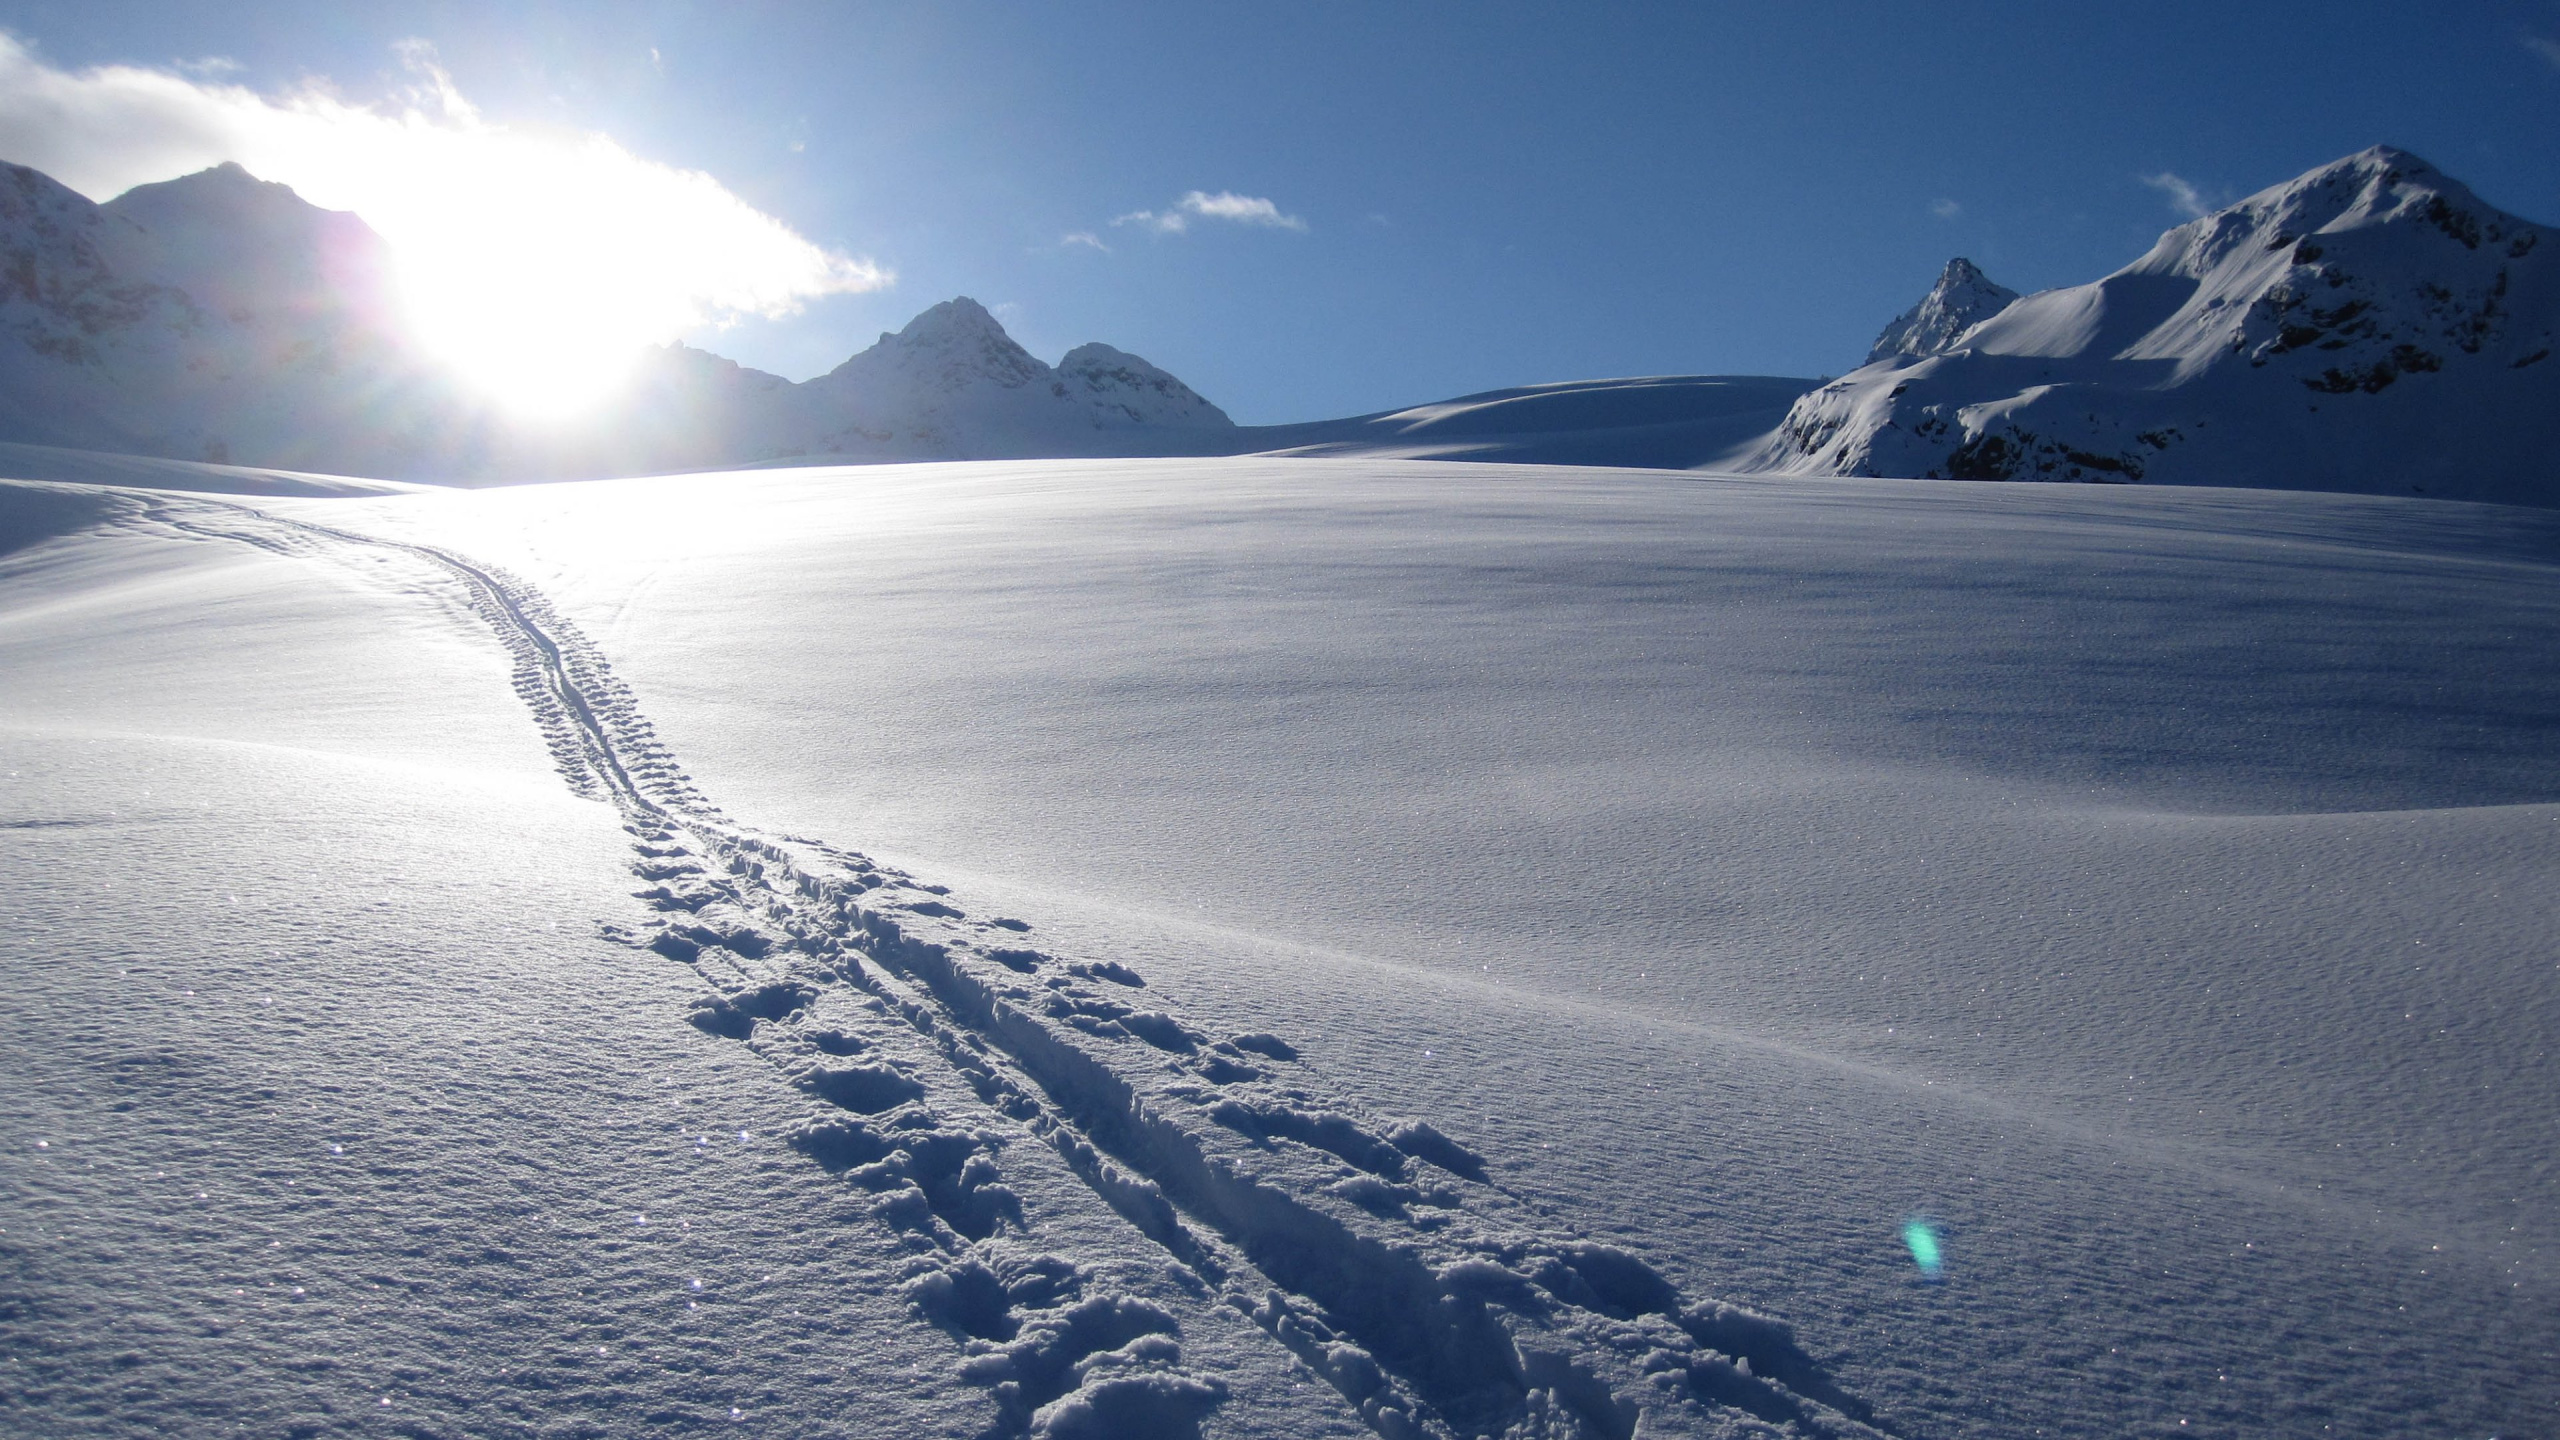 Montaña Cubierta de Nieve Durante el Día. Wallpaper in 2560x1440 Resolution